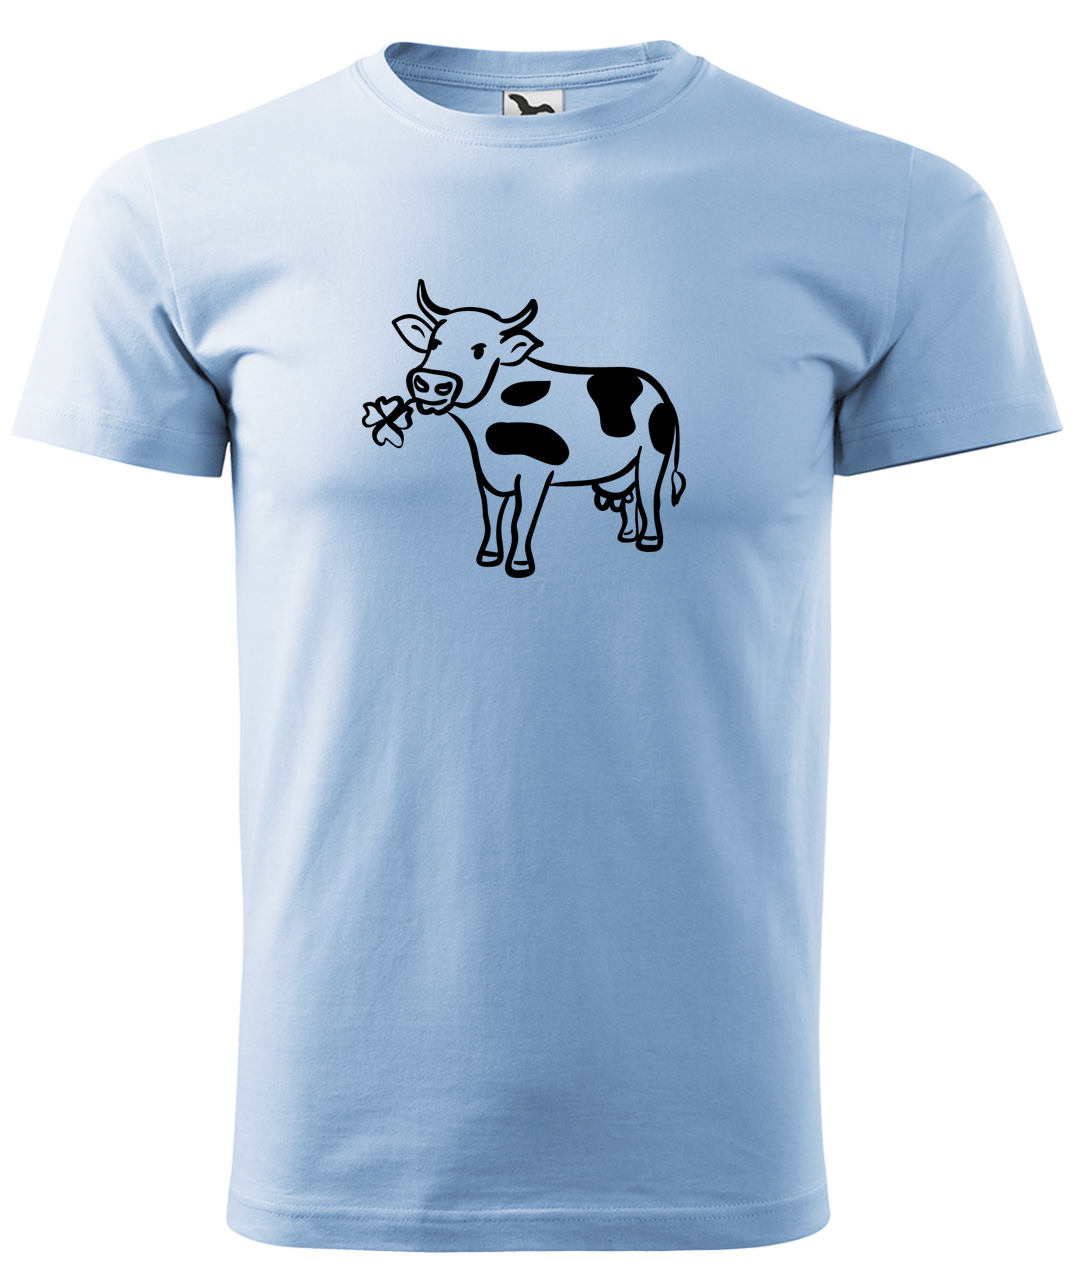 Dětské tričko s krávou - Kravička a jetel Velikost: 4 roky / 110 cm, Barva: Nebesky modrá (15), Délka rukávu: Krátký rukáv